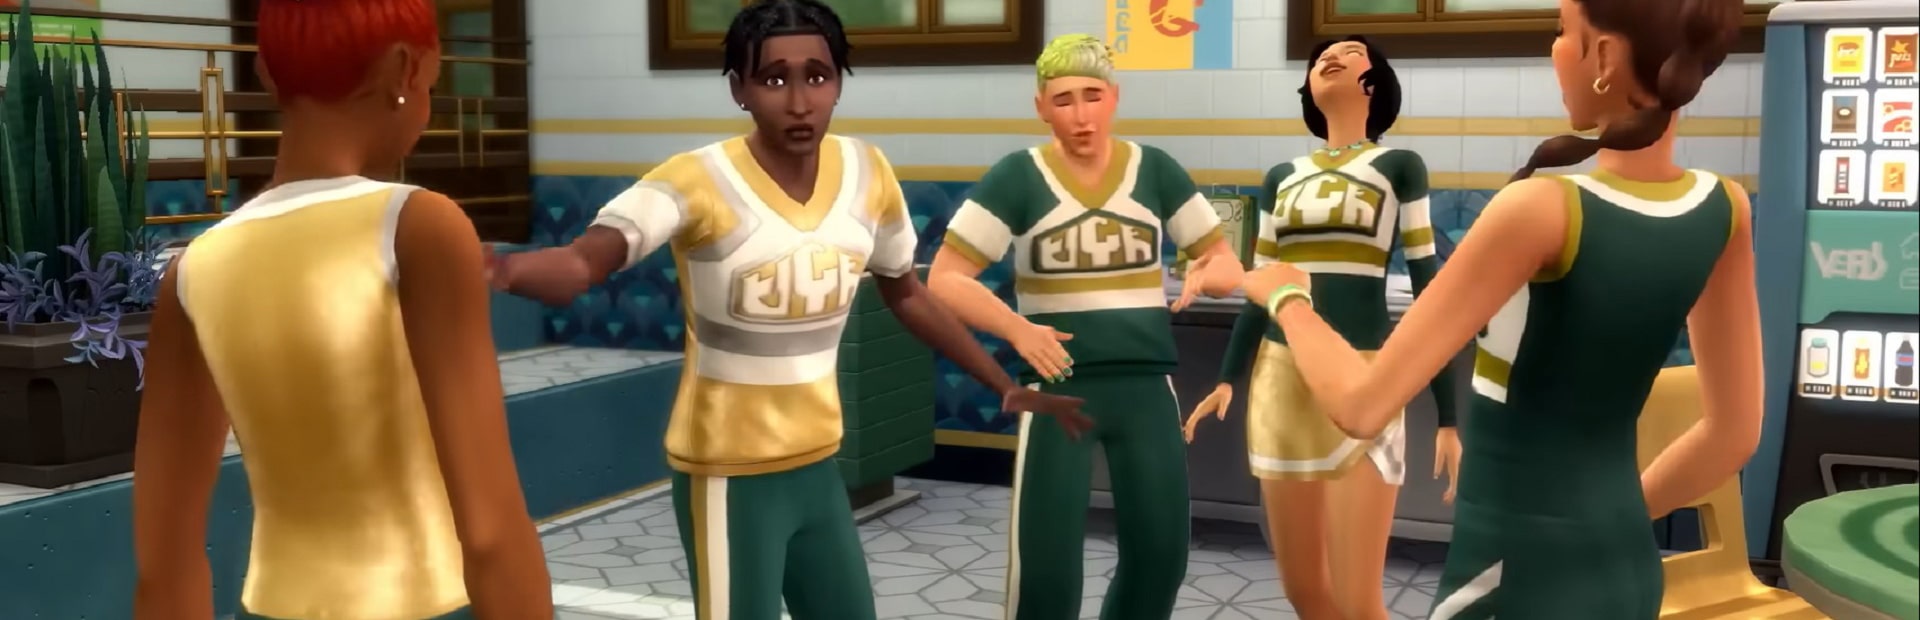 The Sims 4: High School Years | PC Mac | Origin Digital Download | Wallpaper